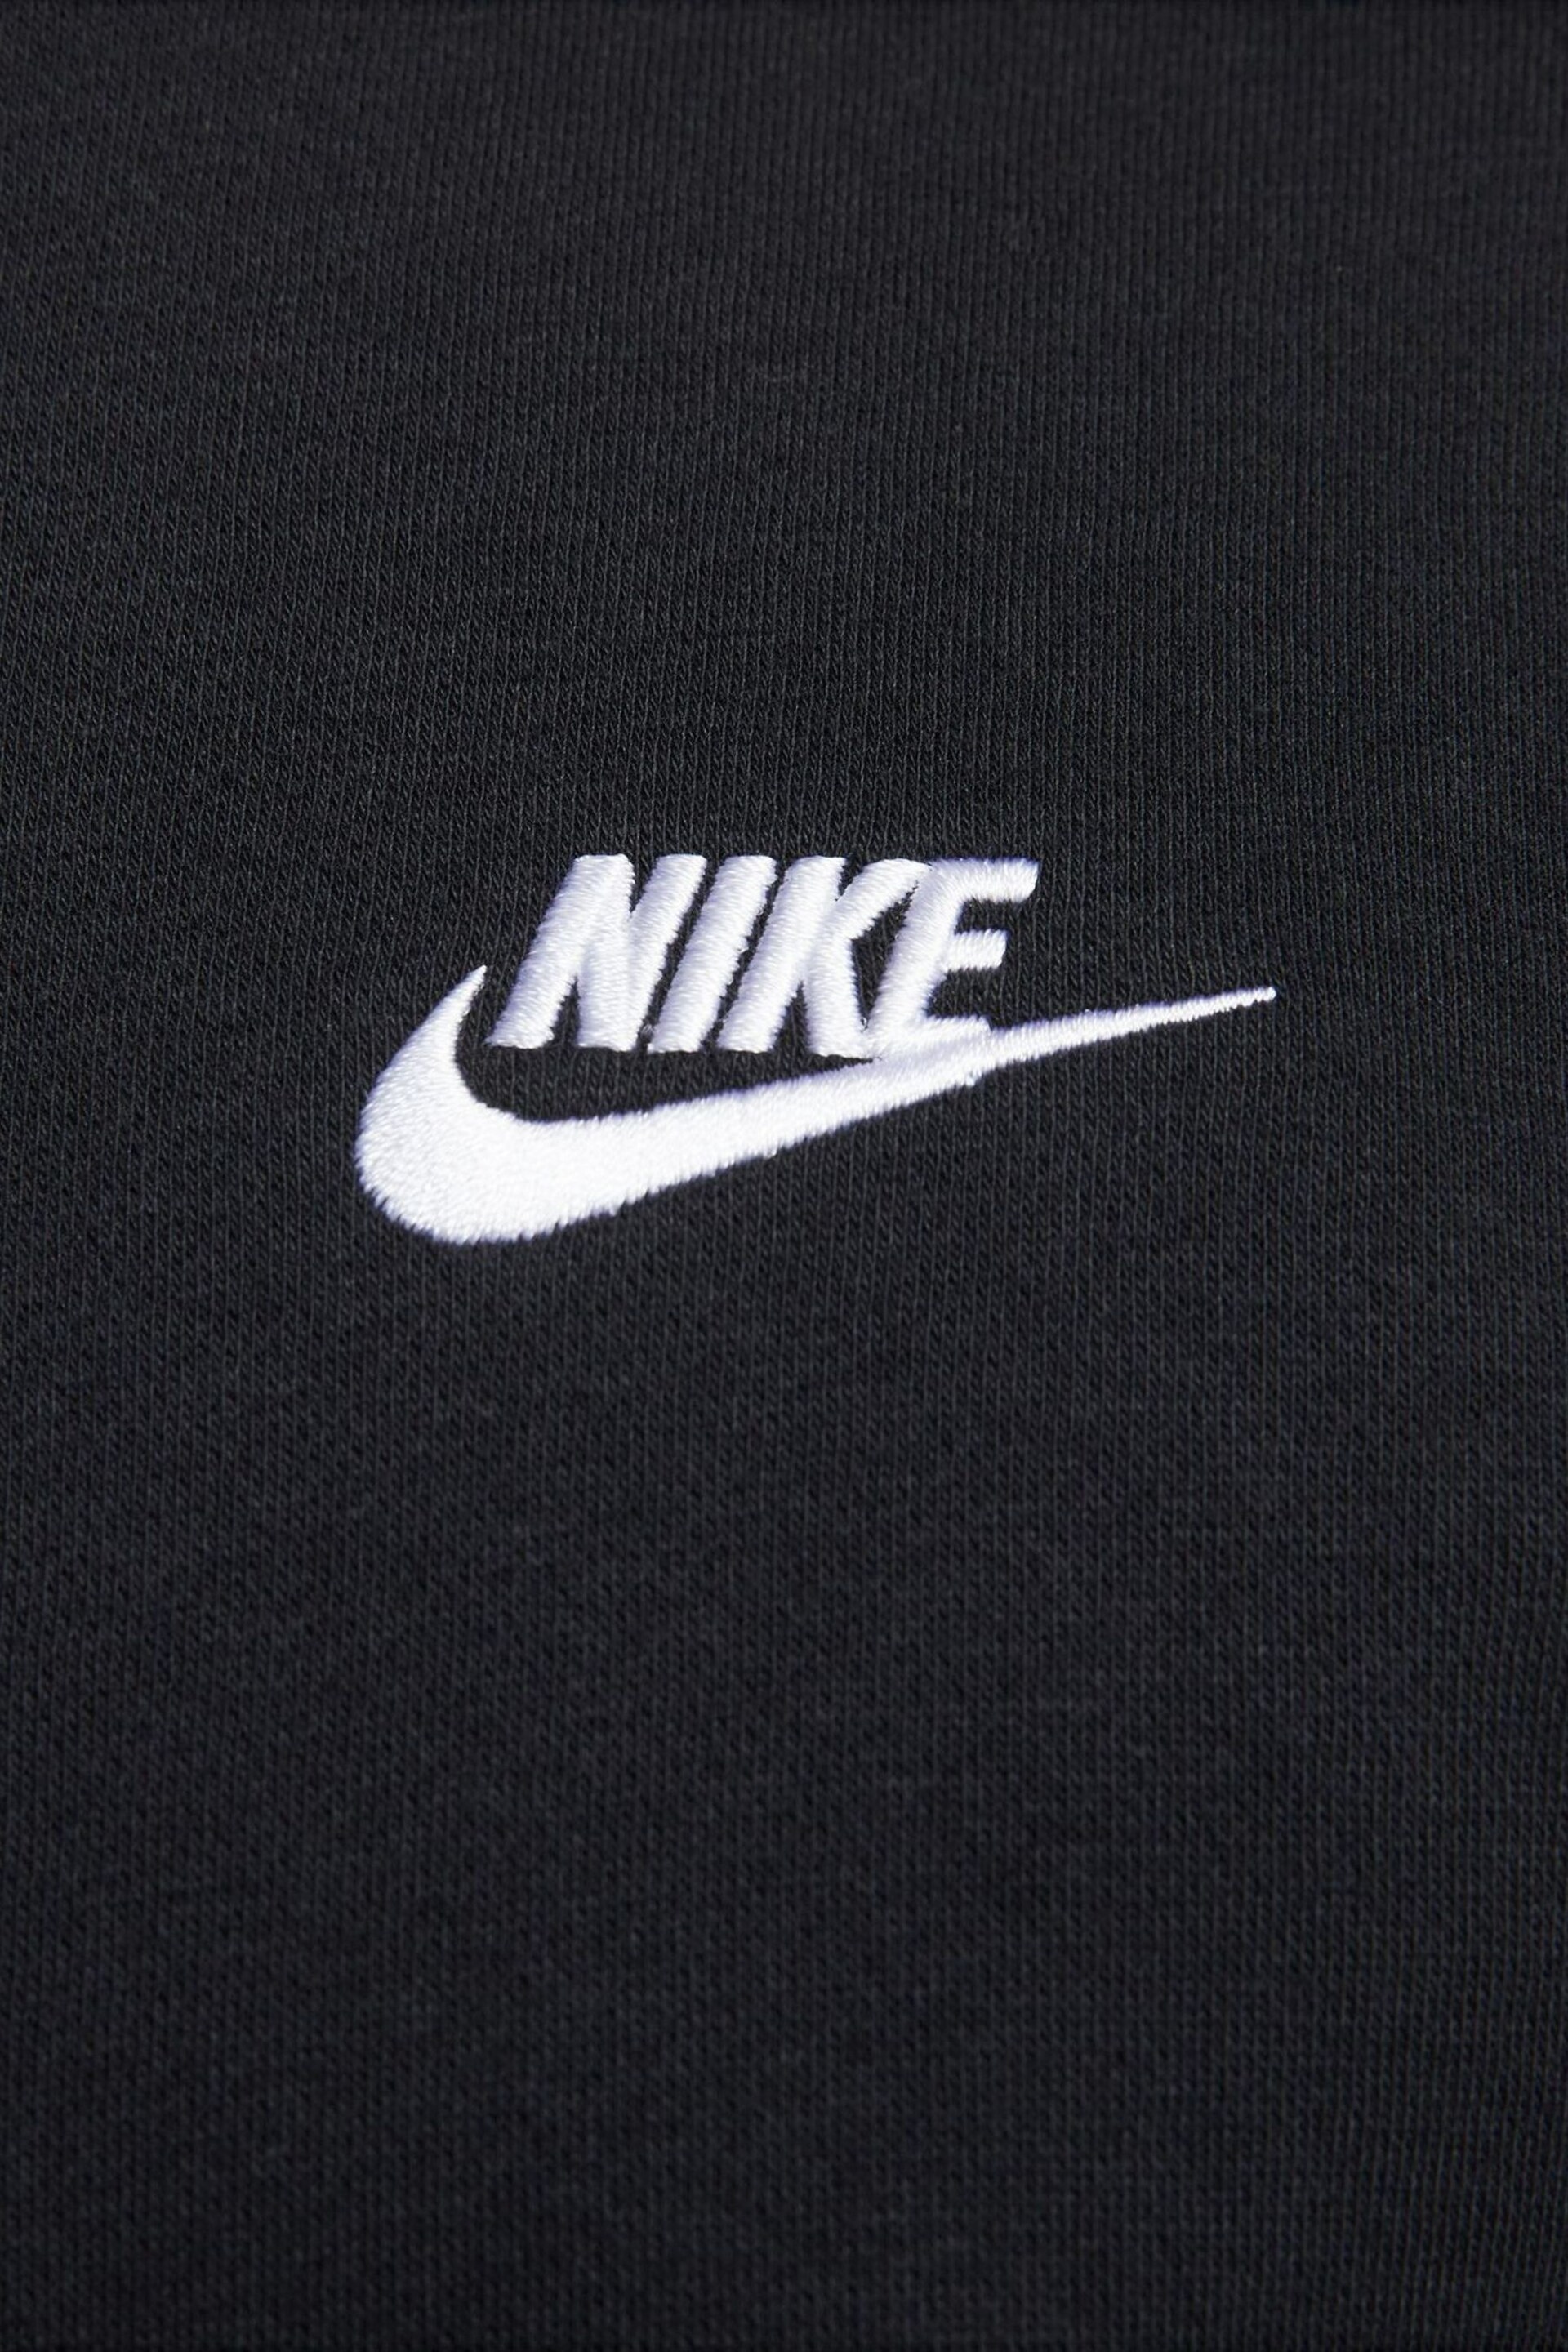 Nike Black Club Fleece Crew Neck Sweatshirt - Image 5 of 5